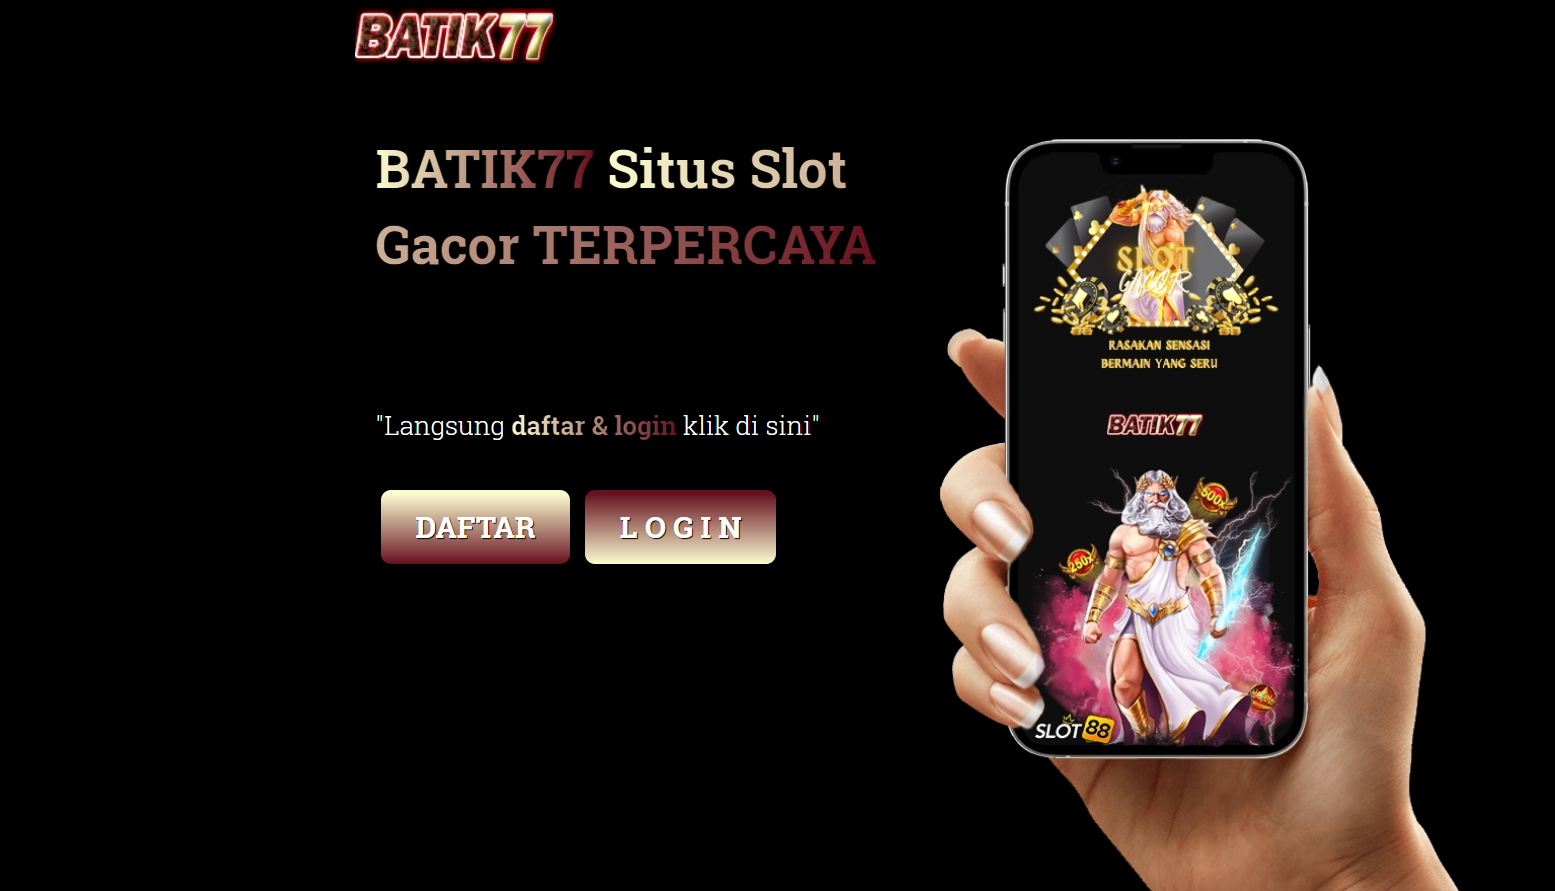 batik77, batik 77, rtp batik77, slot batik77, togel batik77, batik77 gacor, daftar batik77, login batik77, situs batik77, slot gacor, slot online,